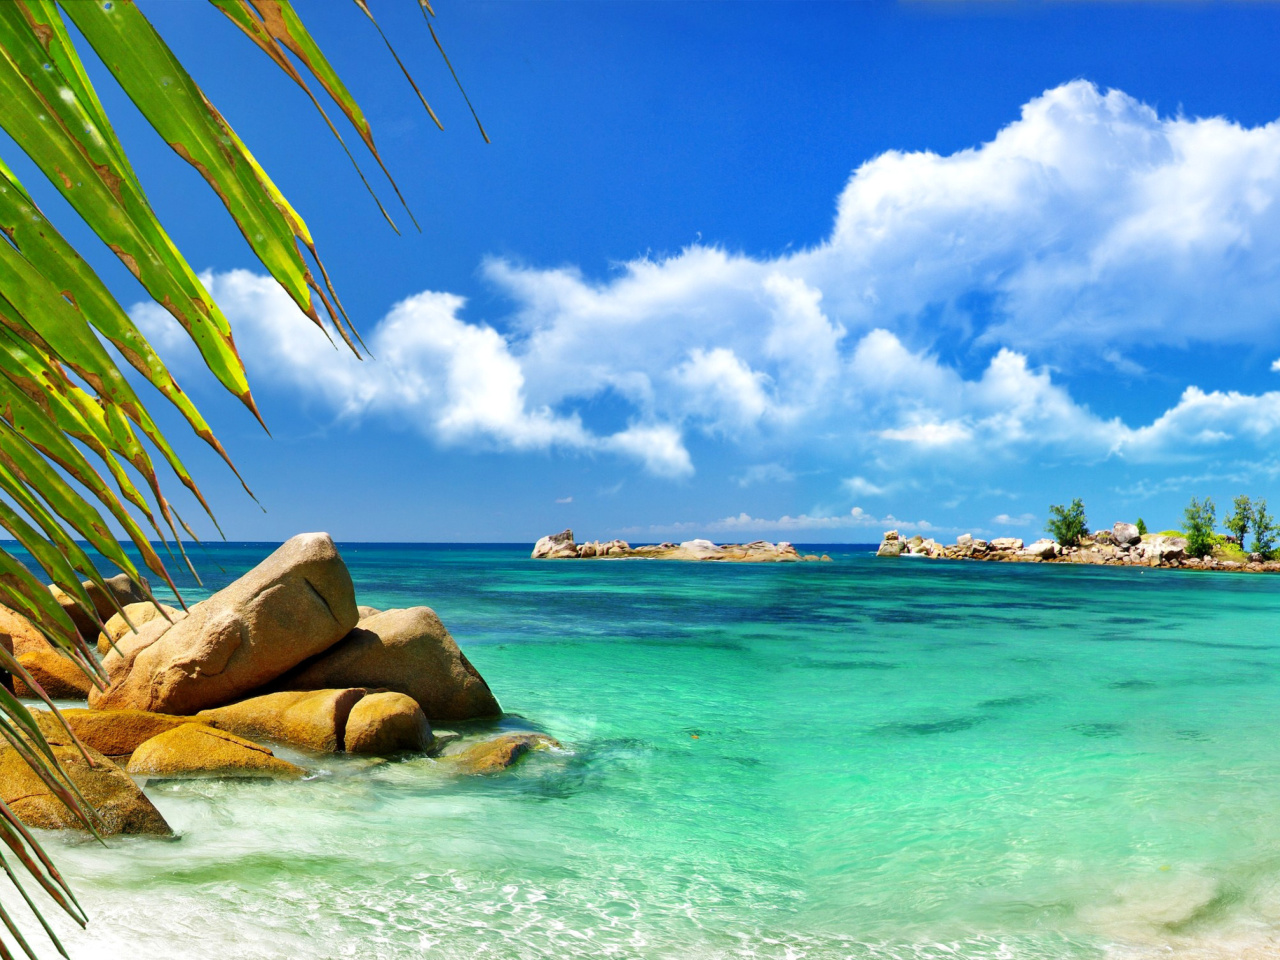 Обои Aruba Luxury Hotel and Beach 1280x960